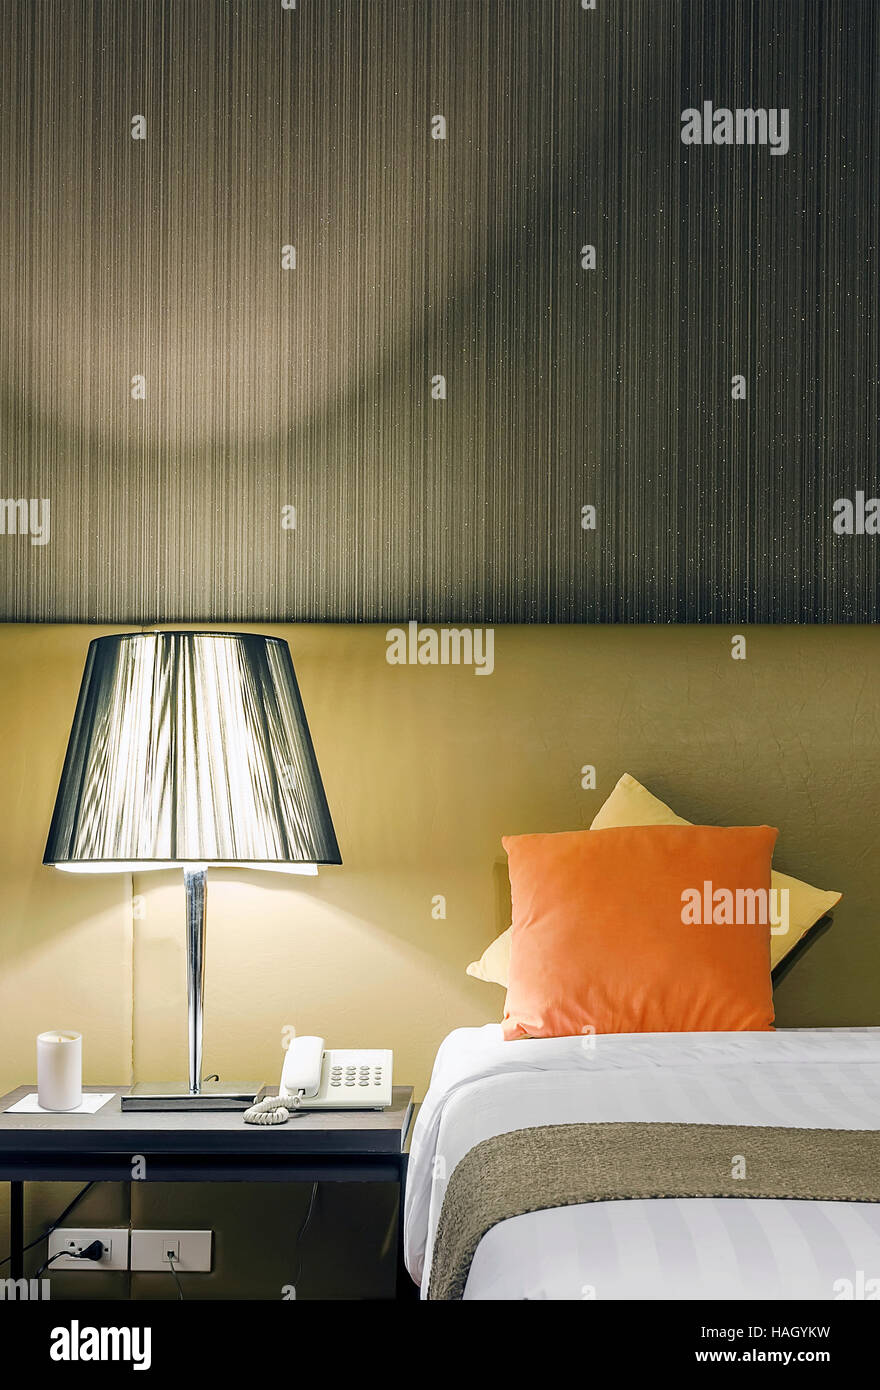 Detalle del diseño interior de habitación de hotel de 3 estrellas Foto de stock